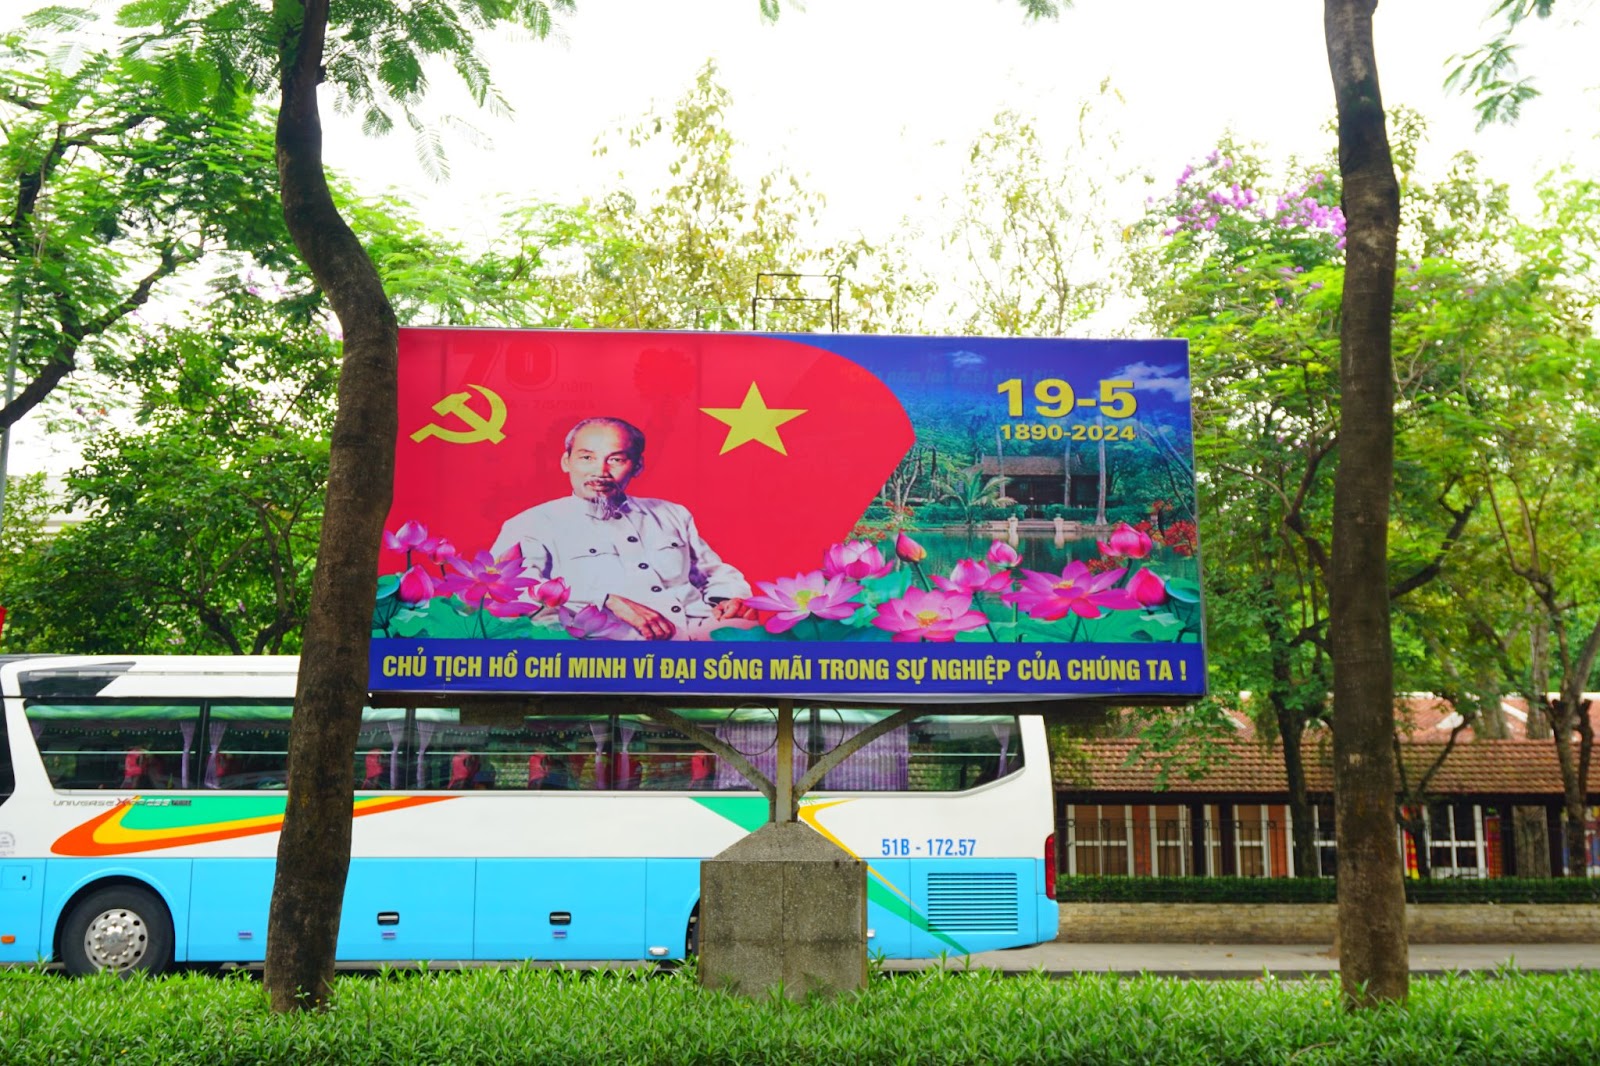 Hà Nội rợp sắc cờ hoa kỷ niệm ngày sinh Chủ tịch Hồ Chí Minh - Ảnh 6.